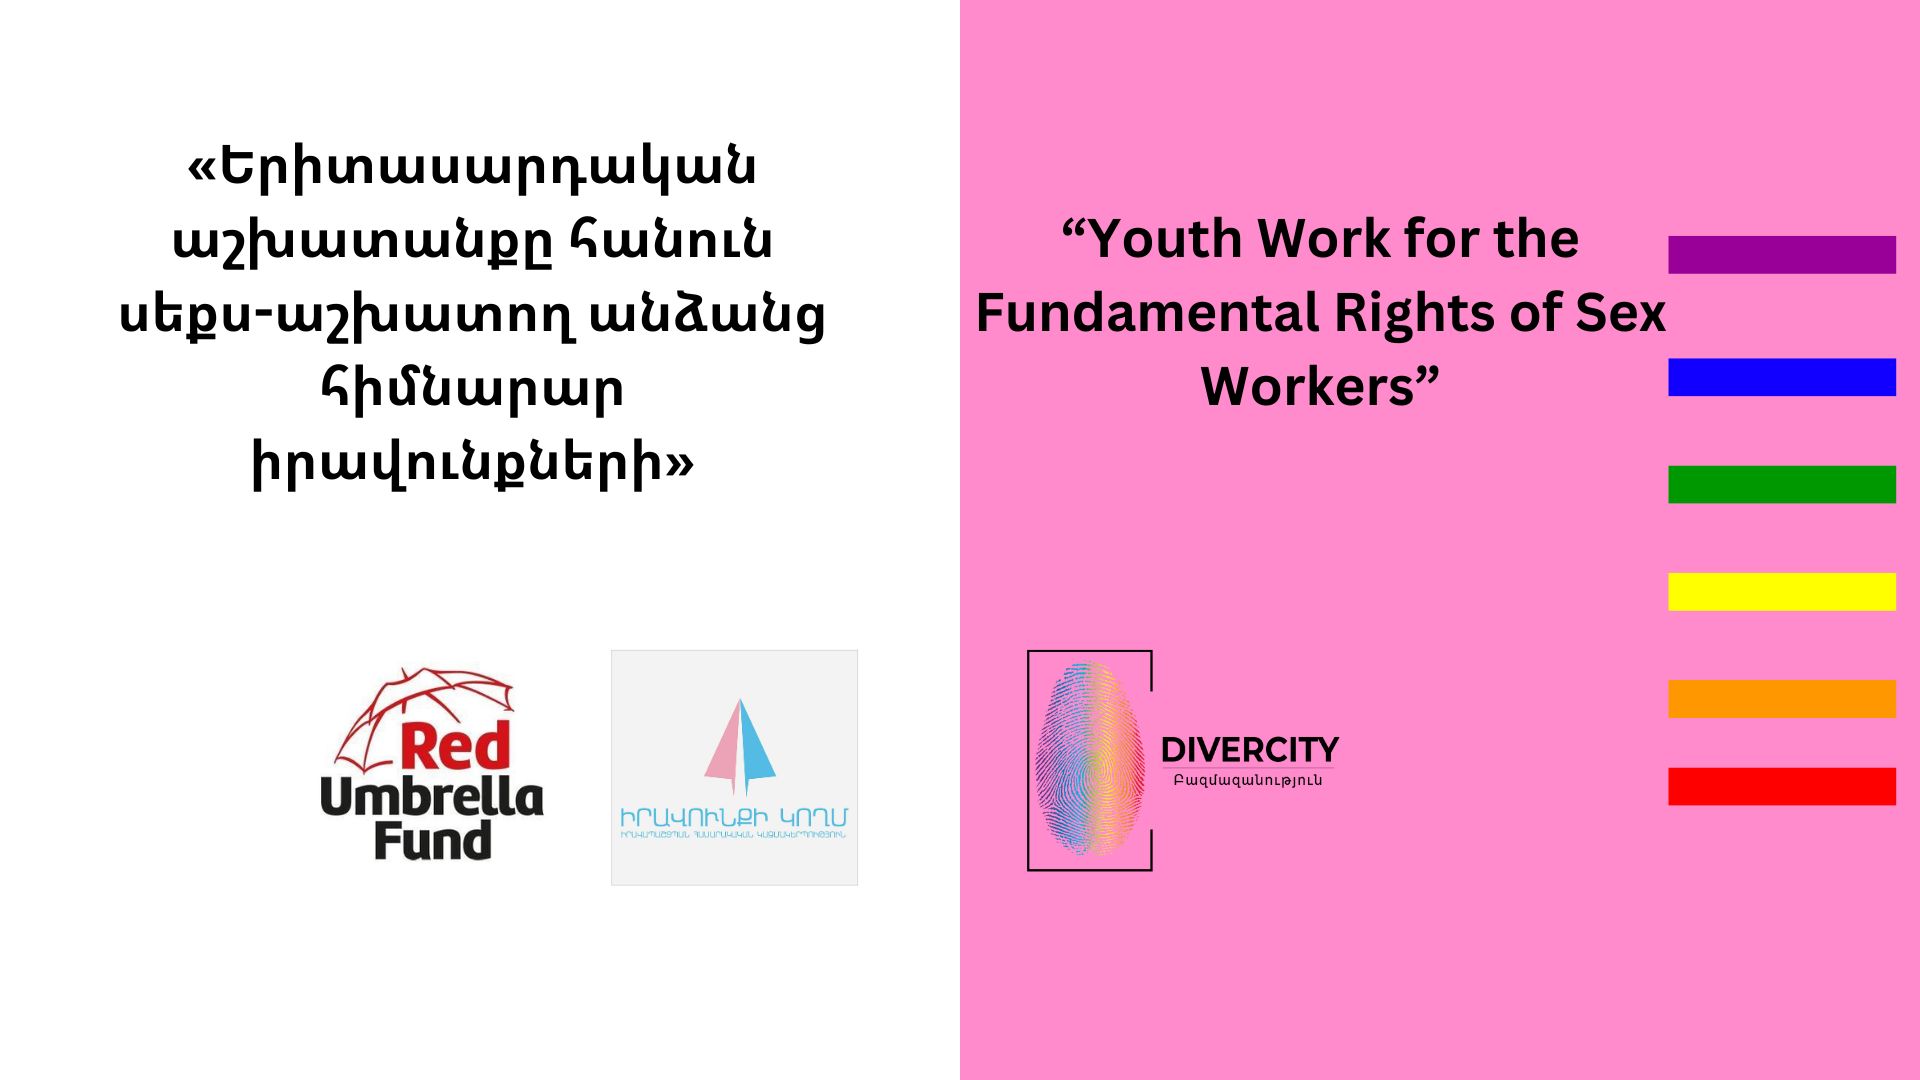 Երիտասարդական աշխատանքը հանուն սեքս-աշխատող անձանց հիմնարար իրավունքների